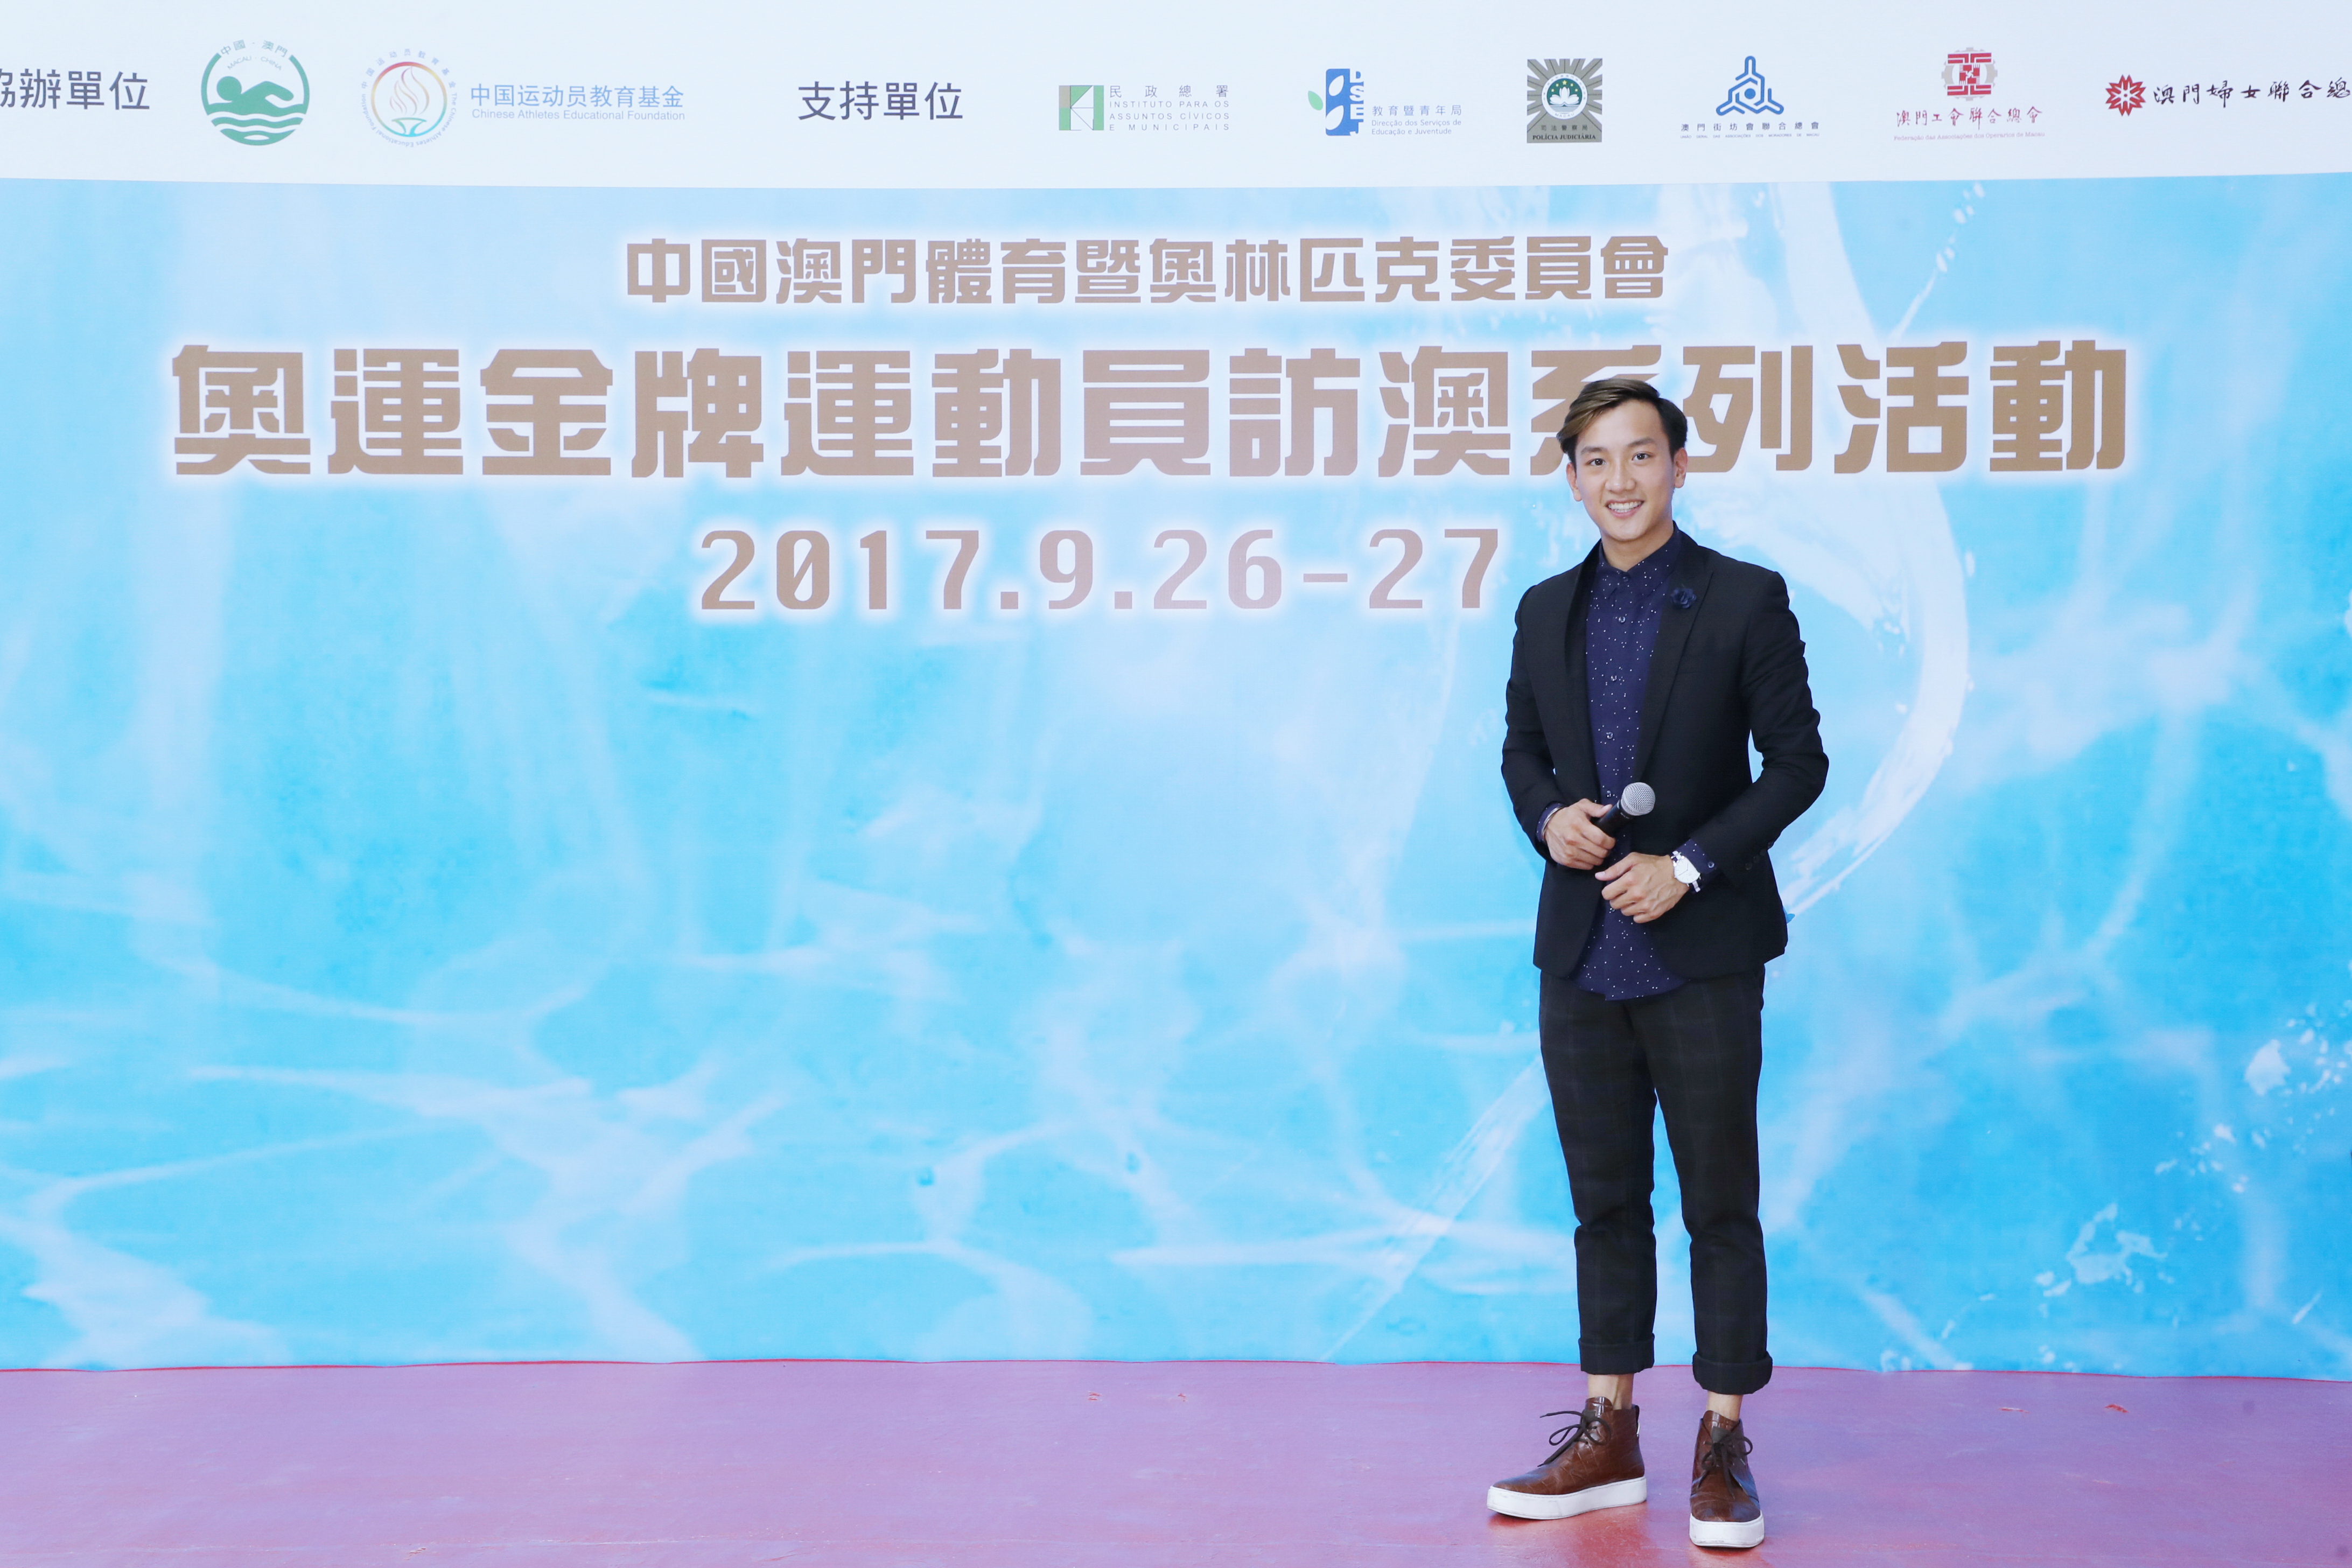 周啓陽 Elvis Chao司儀工作紀錄: 奧運金牌跳水運動員訪澳 - 跳水表演